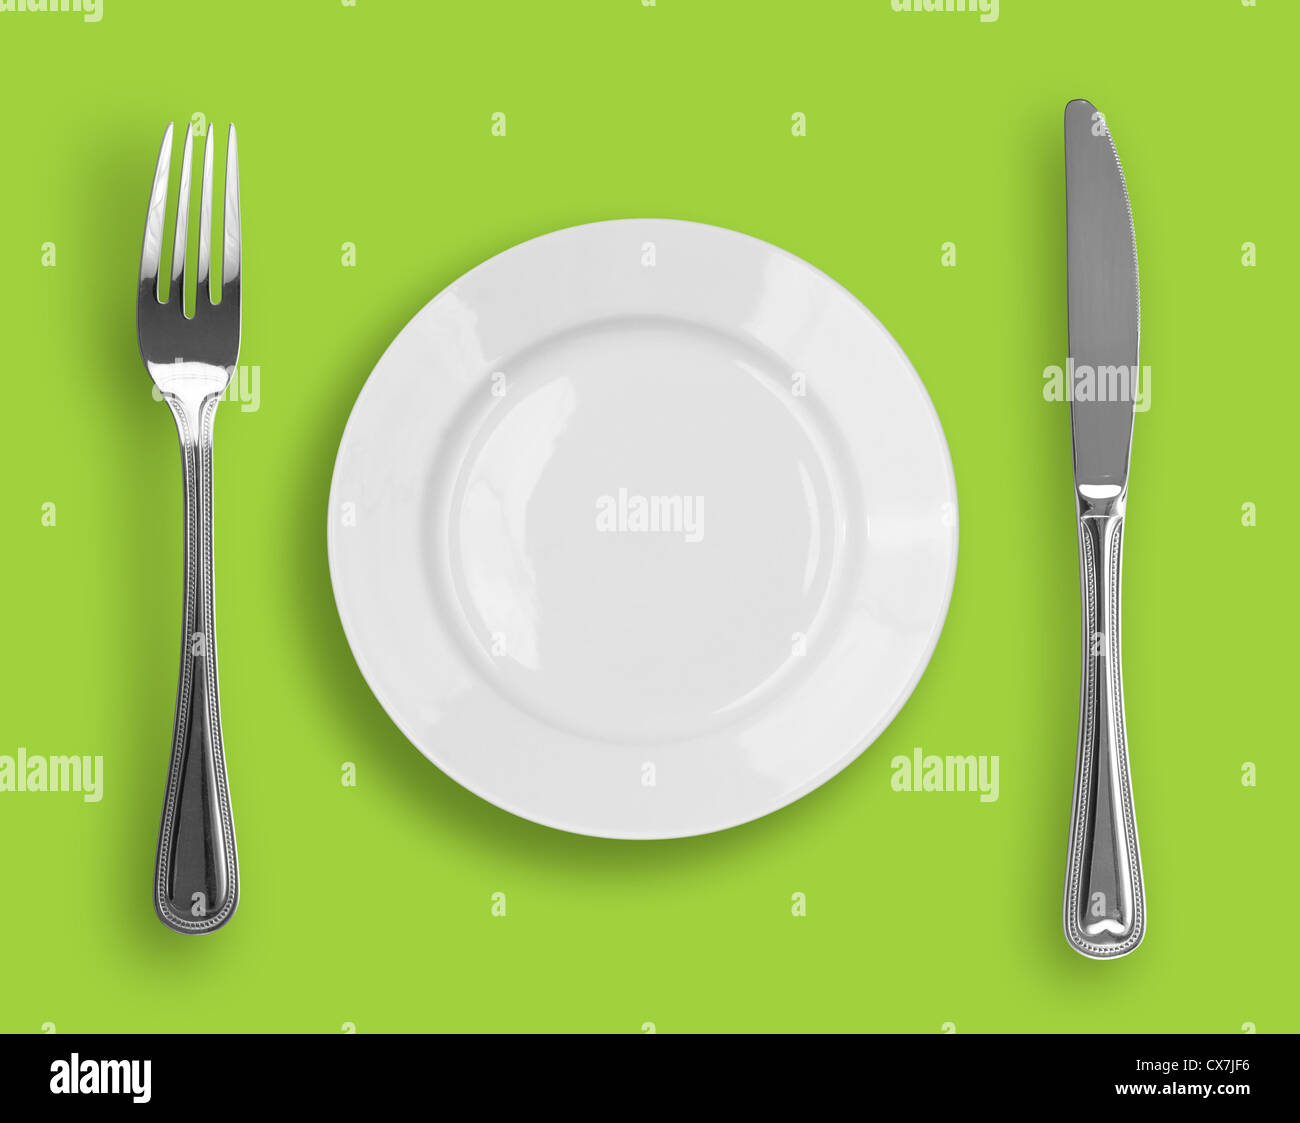 Dao, dĩa trắng và nĩa trên nền xanh: Sự tỉ mỉ, tinh tế trong trang trí đĩa, dao và nĩa sẽ được lưu giữ hoàn hảo trên một nền xanh tươi sáng. Hãy để mắt tìm ngay vật phẩm phù hợp với không gian của bạn.